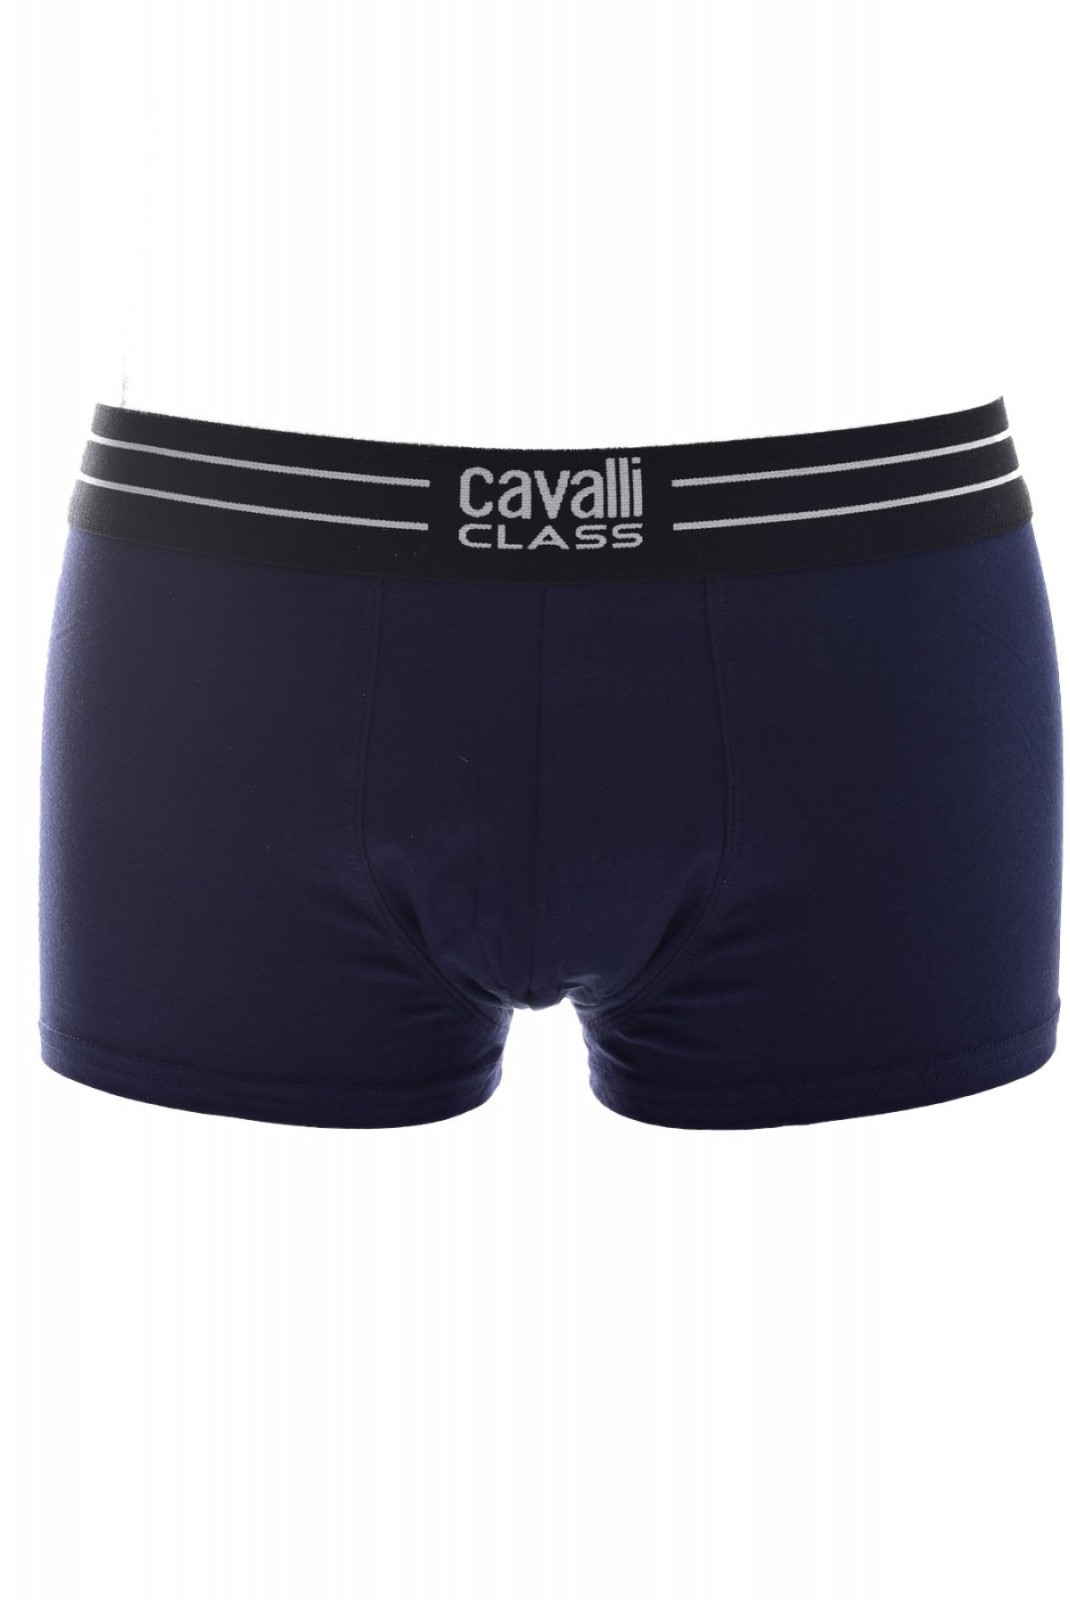 Tripack boxers stretch Cavalli Class NAVY QXO01B JD003